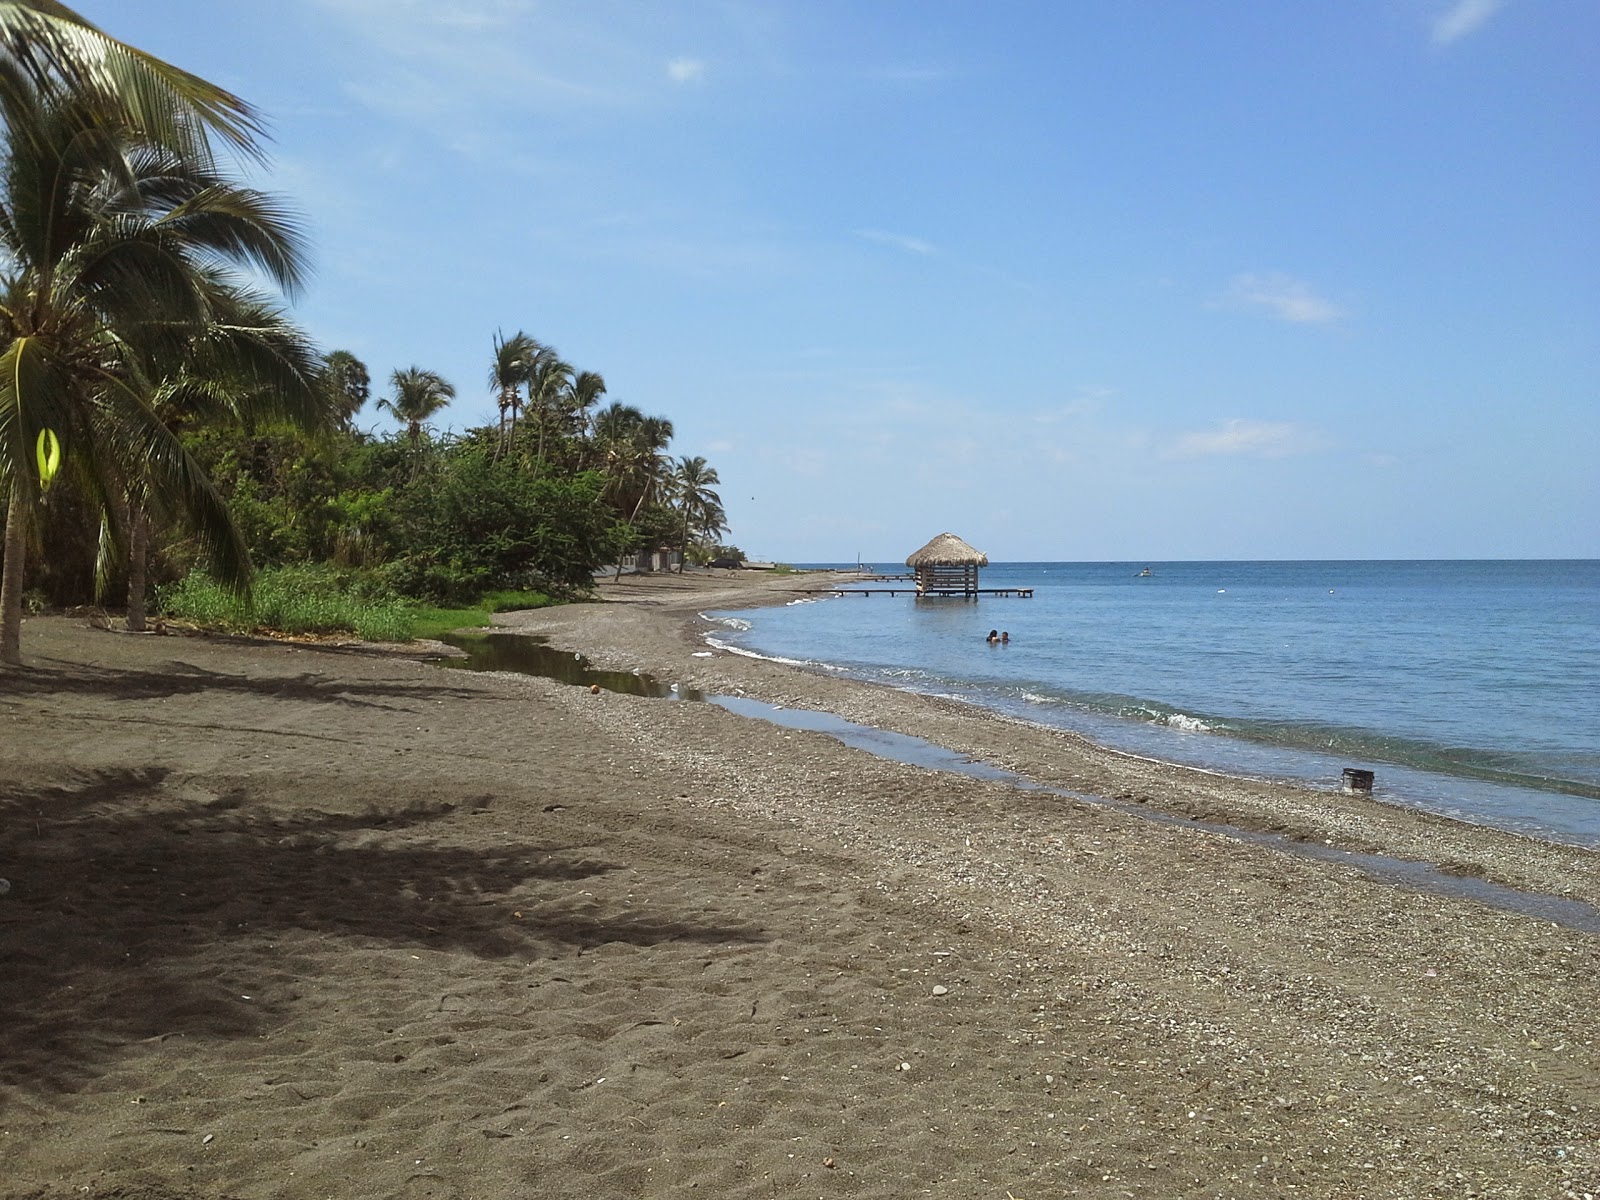 Palmar de Ocoa beach'in fotoğrafı gri kum yüzey ile